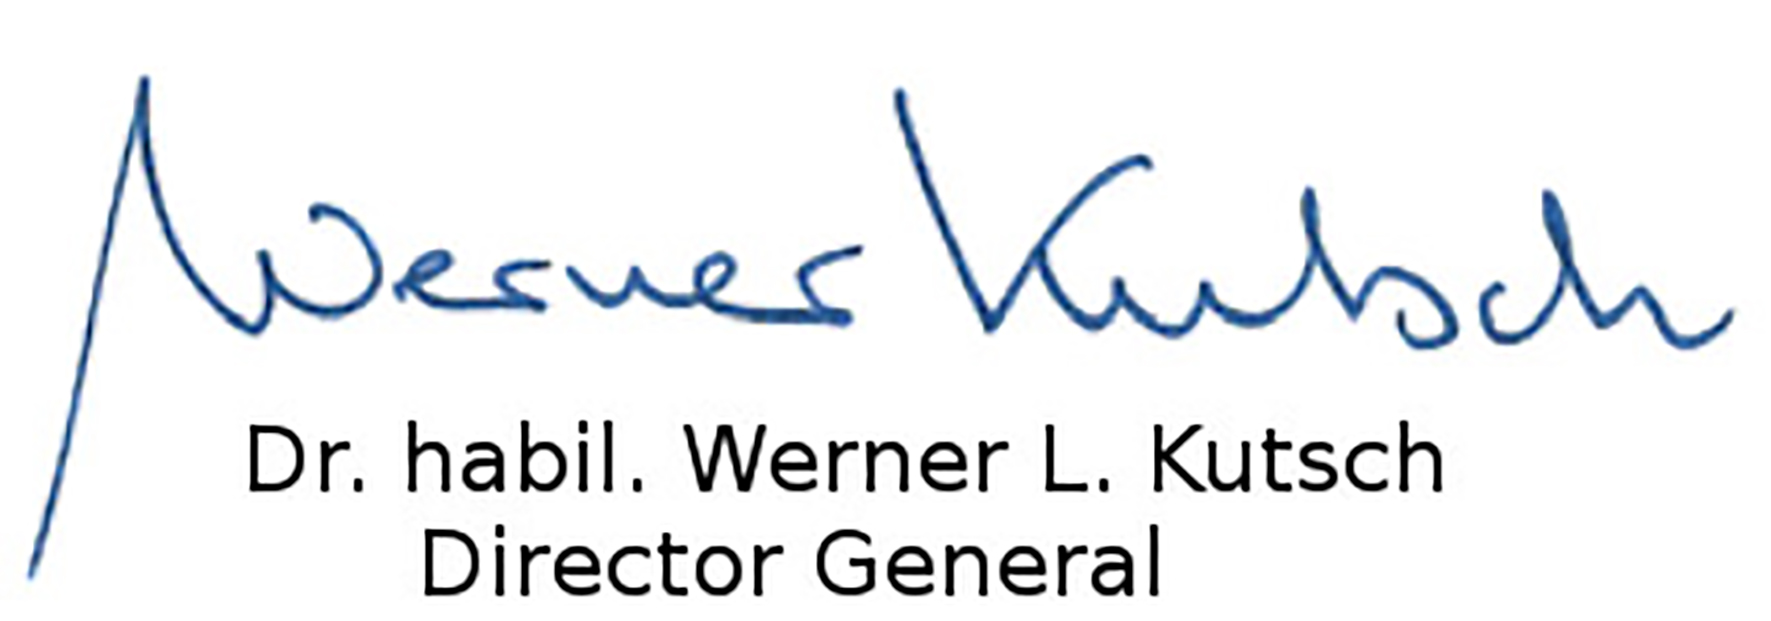 Werner Kutsch, Director General of ICOS